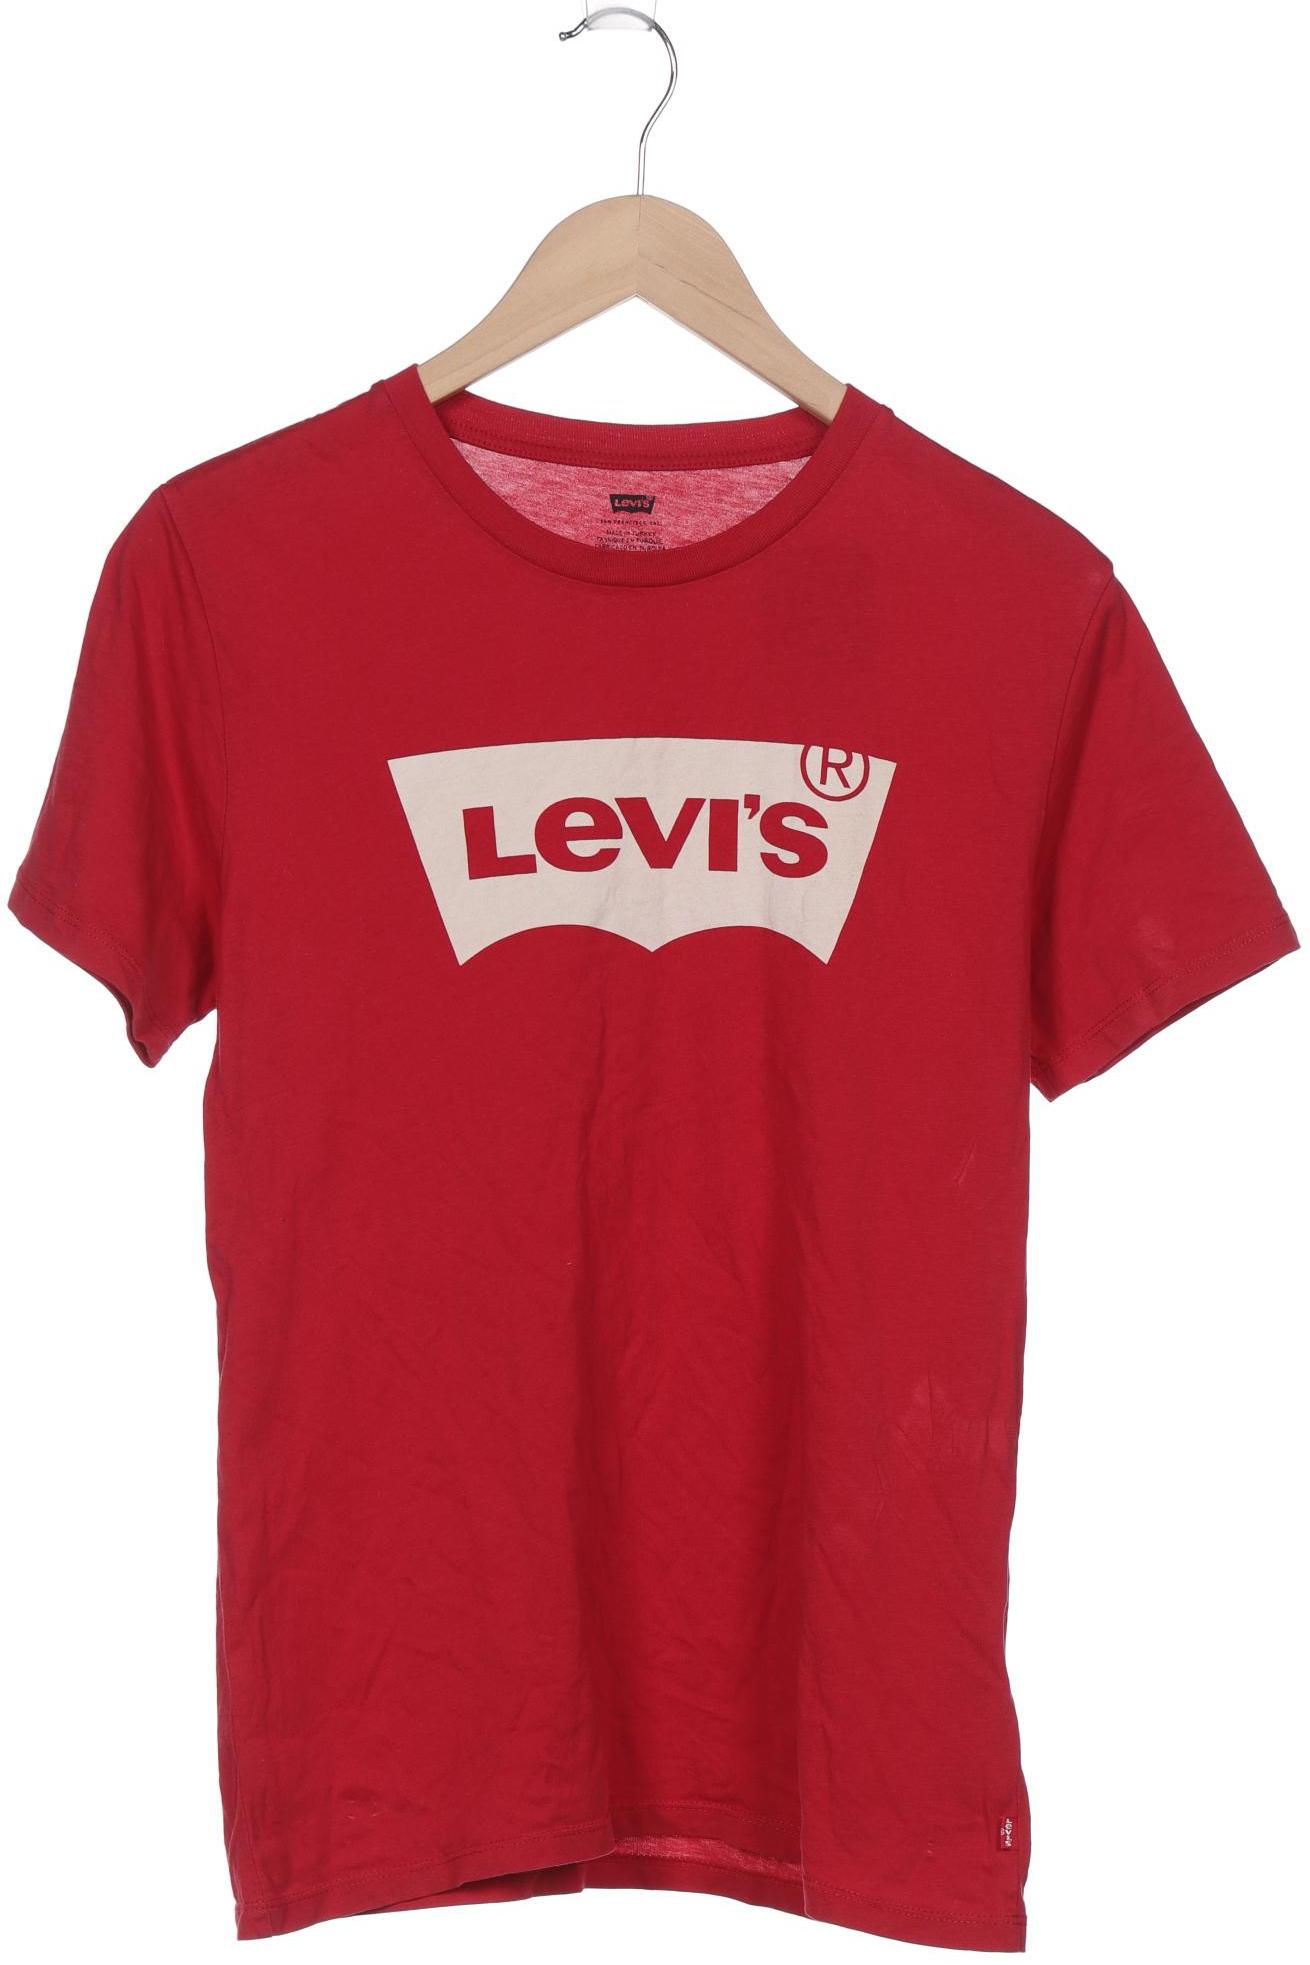 Levis Herren T-Shirt, rot von Levis